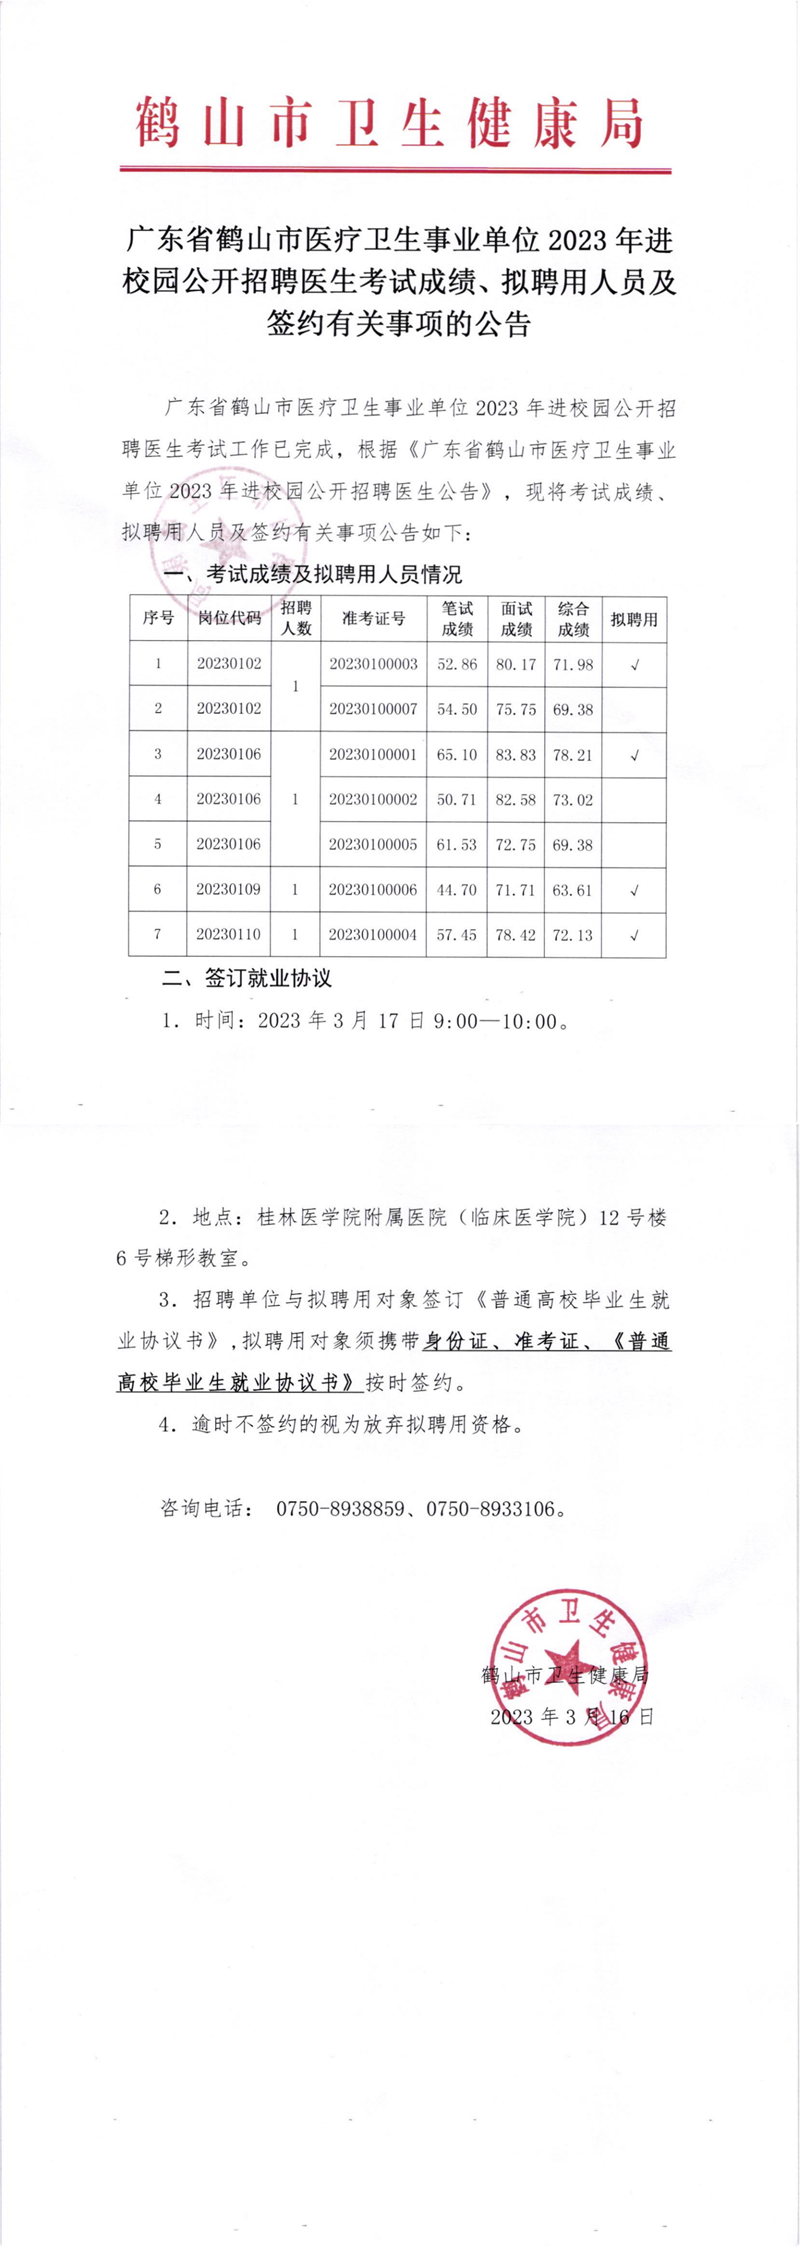 广东省鹤山市医疗卫生事业单位2023年进校园公开招聘医生考试成绩及签约有关事项的公告_00.png